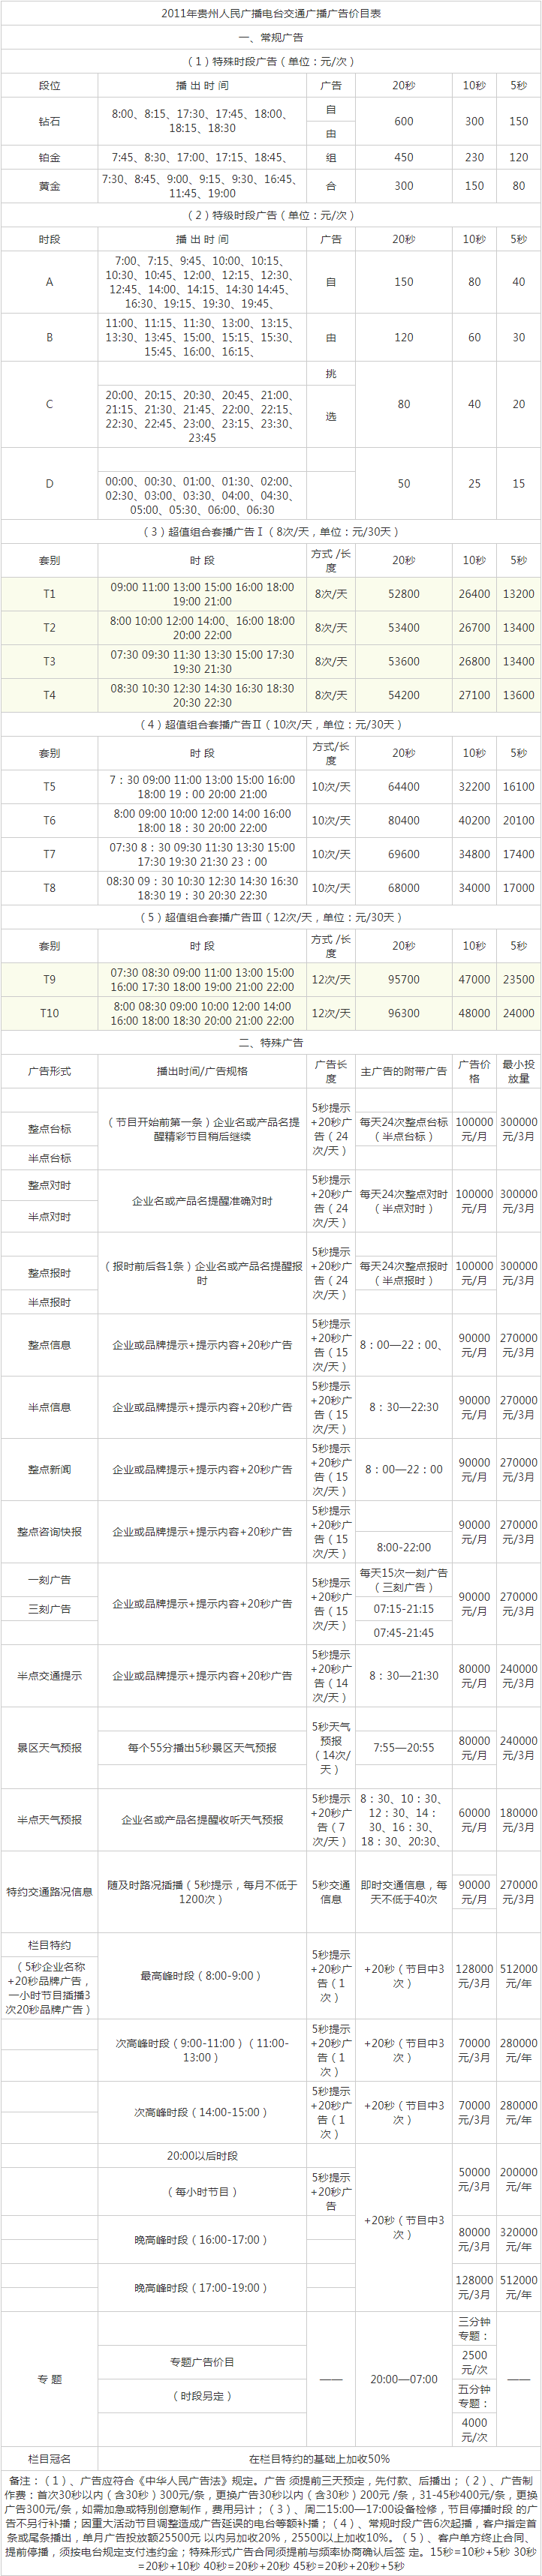 2011贵州人民广播电台交通广播 FM95.2广告报价表.png